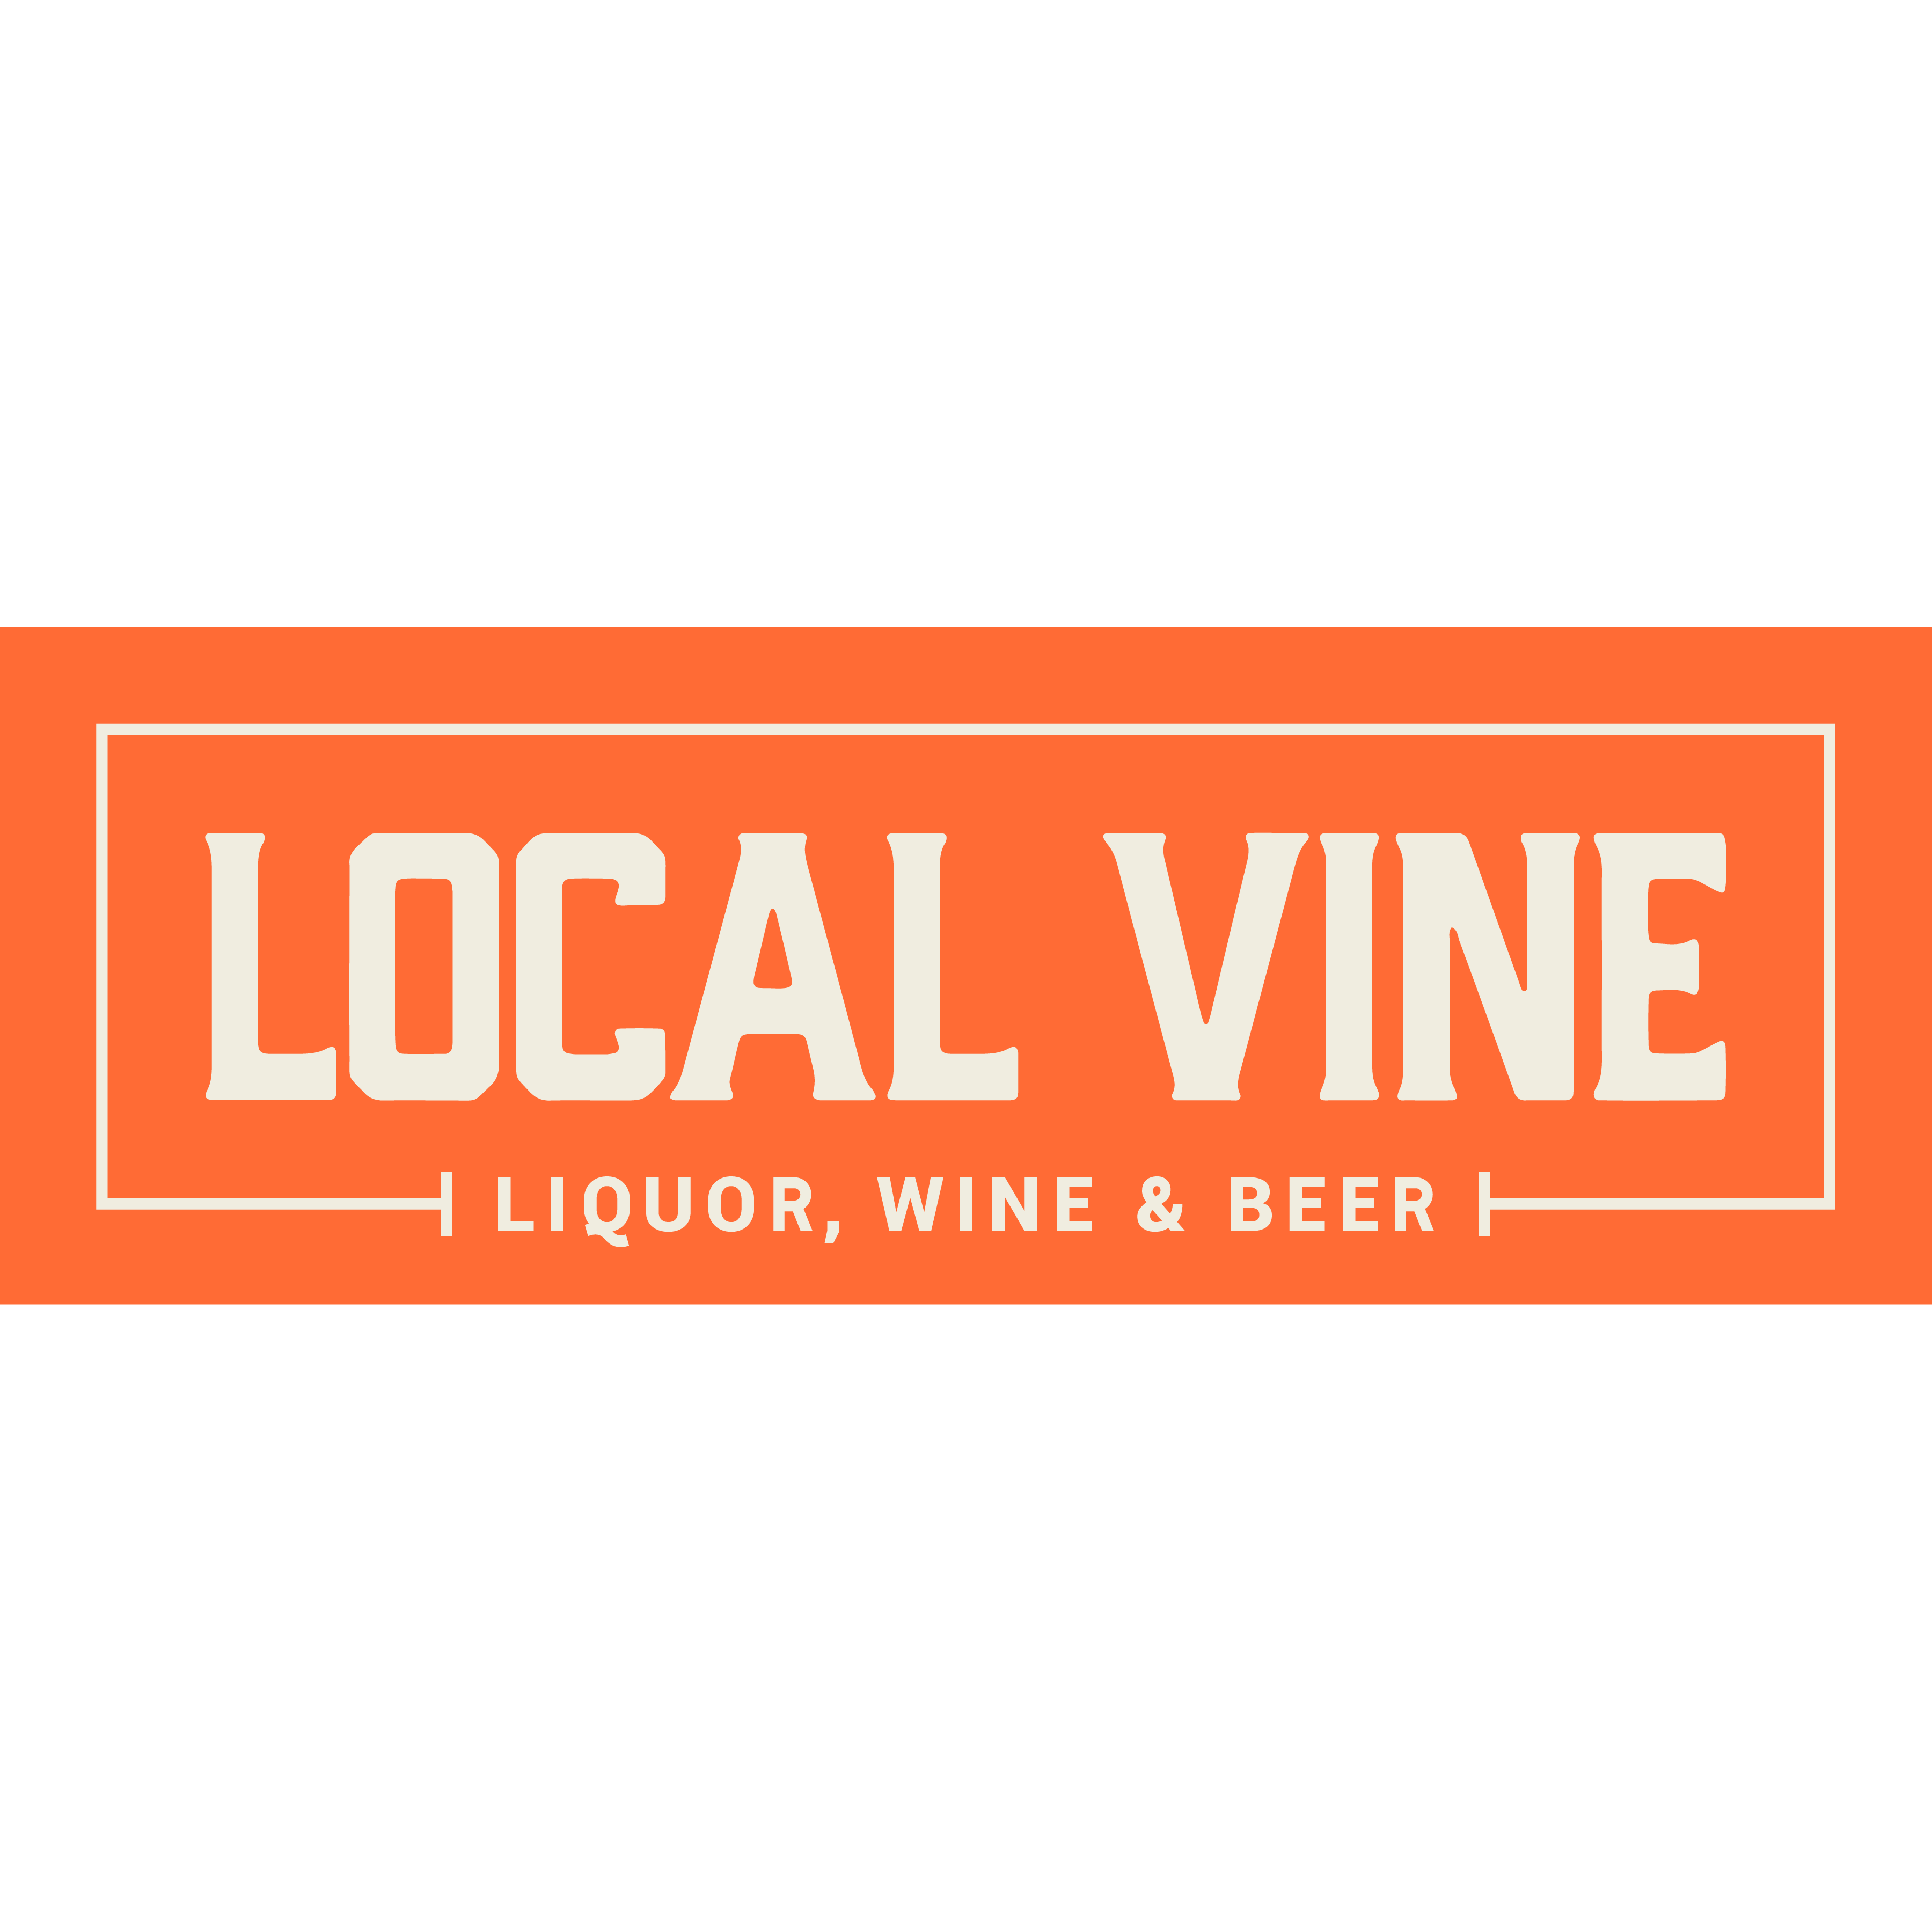 Local Vine Wine Beer and Liquor - Atlanta, GA 30339 - (404)937-3060 | ShowMeLocal.com